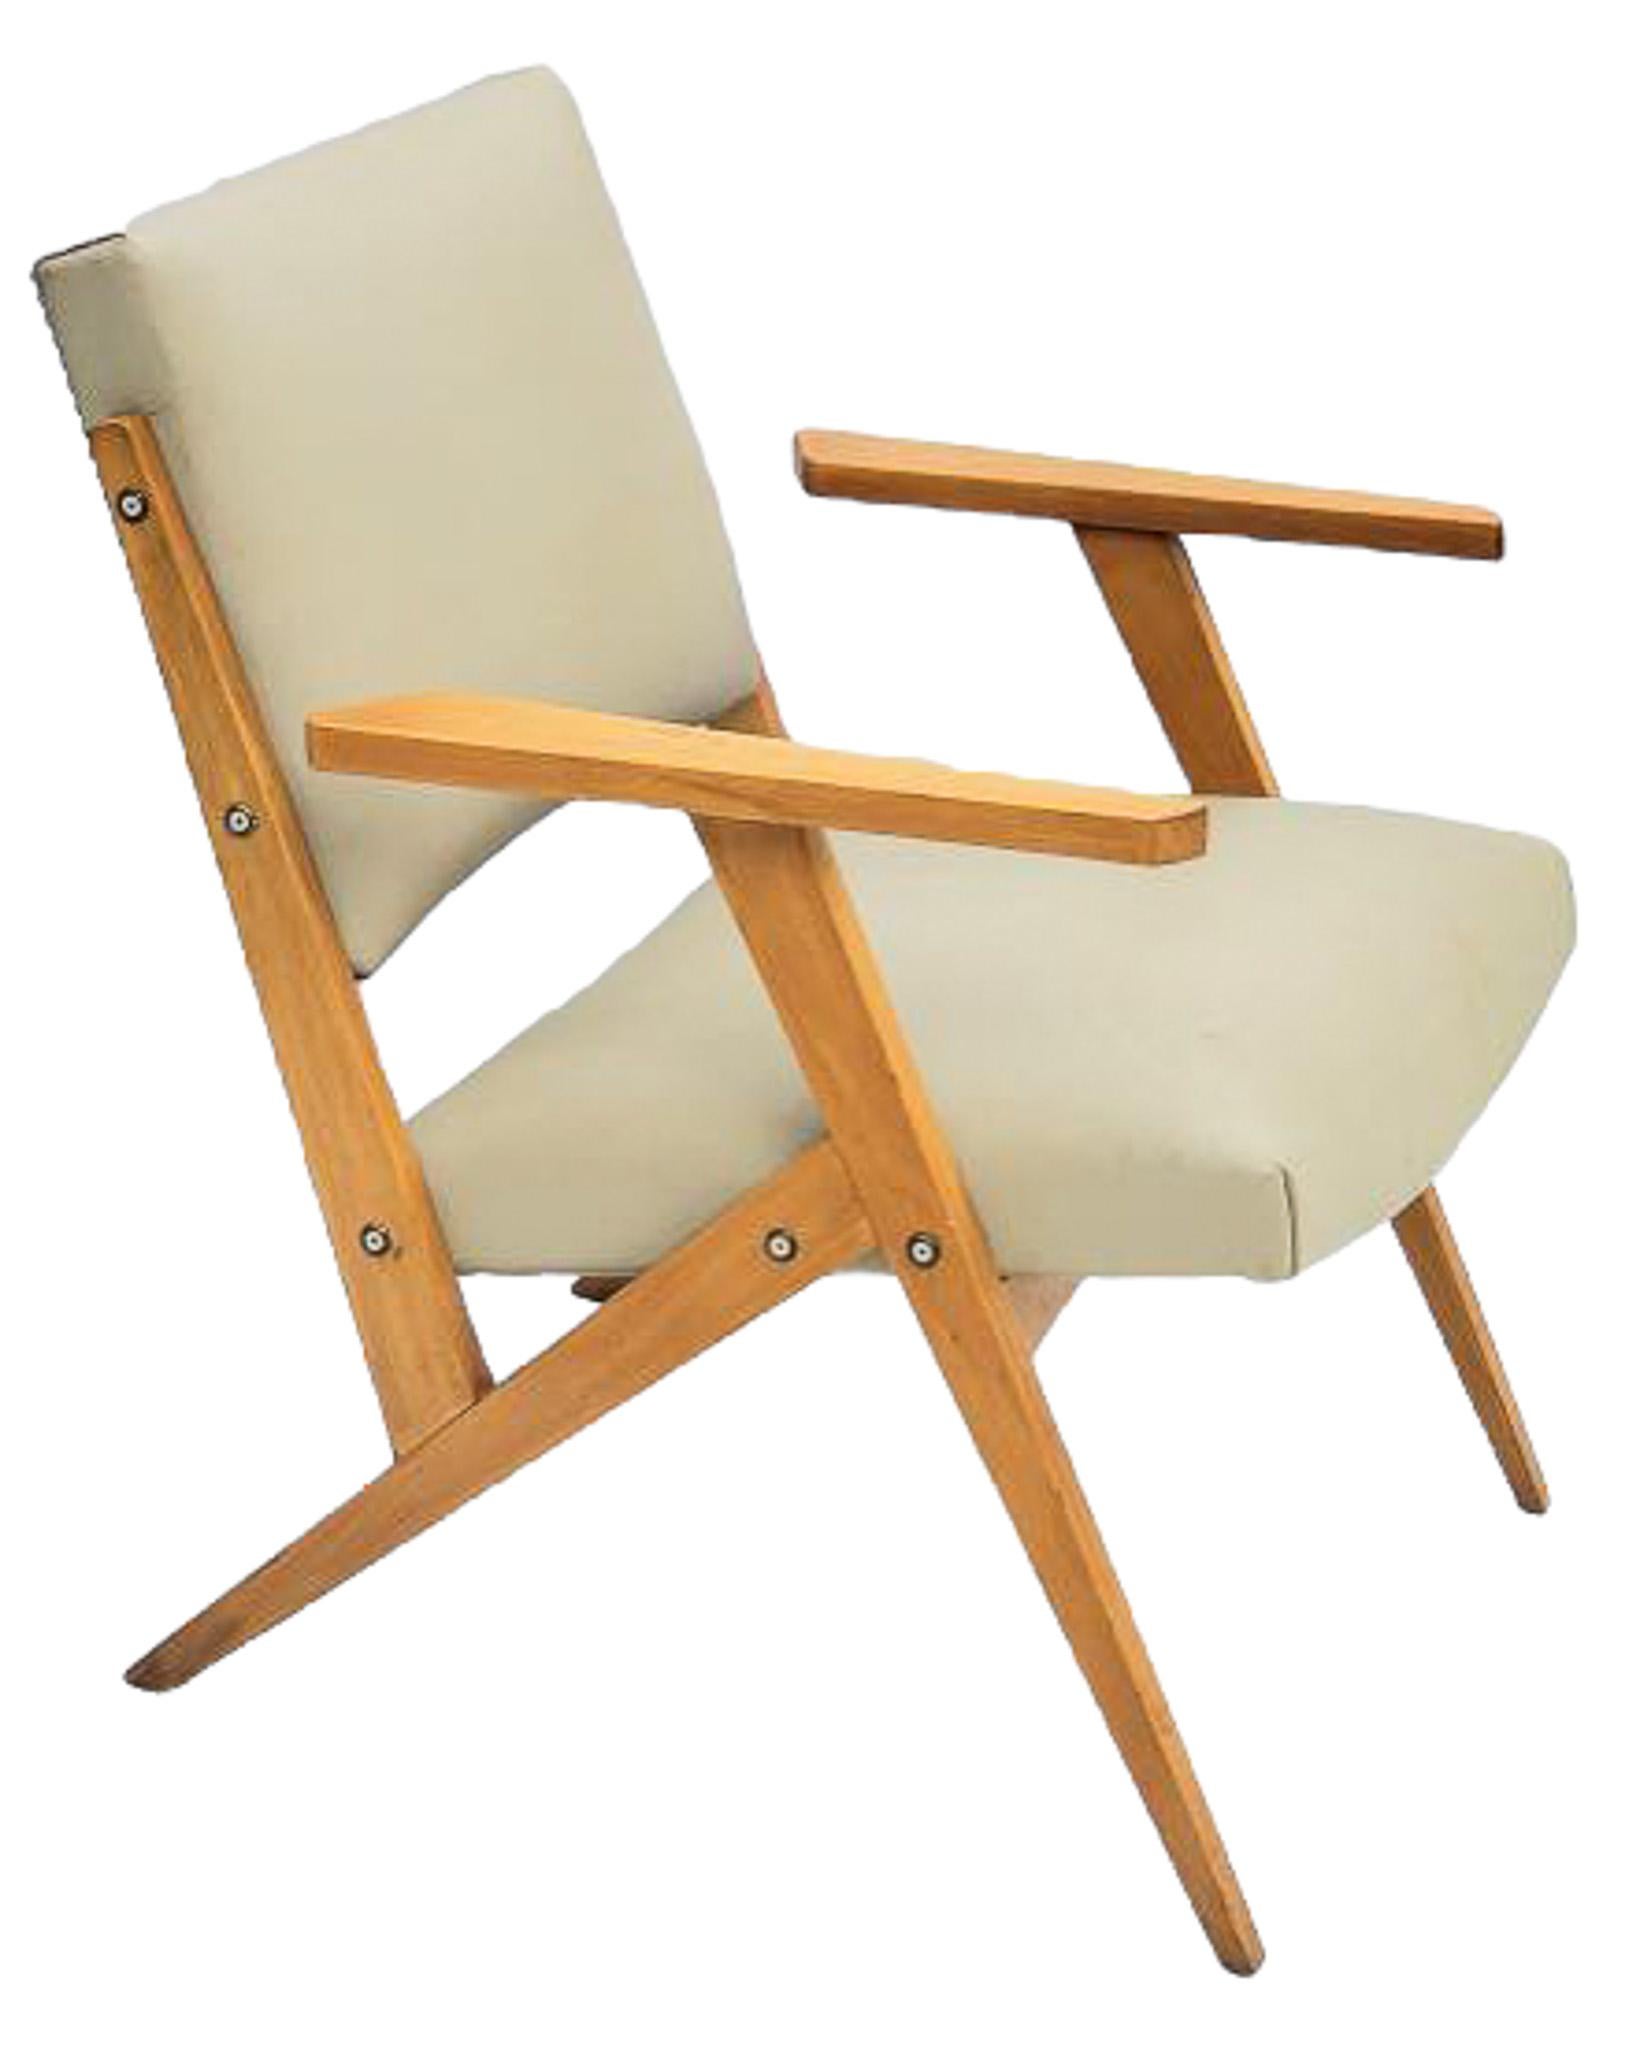 Brazilian Modern Armchair in Wood & Mint Faux Leather, Jose Zanine Caldas, 1950s For Sale 4